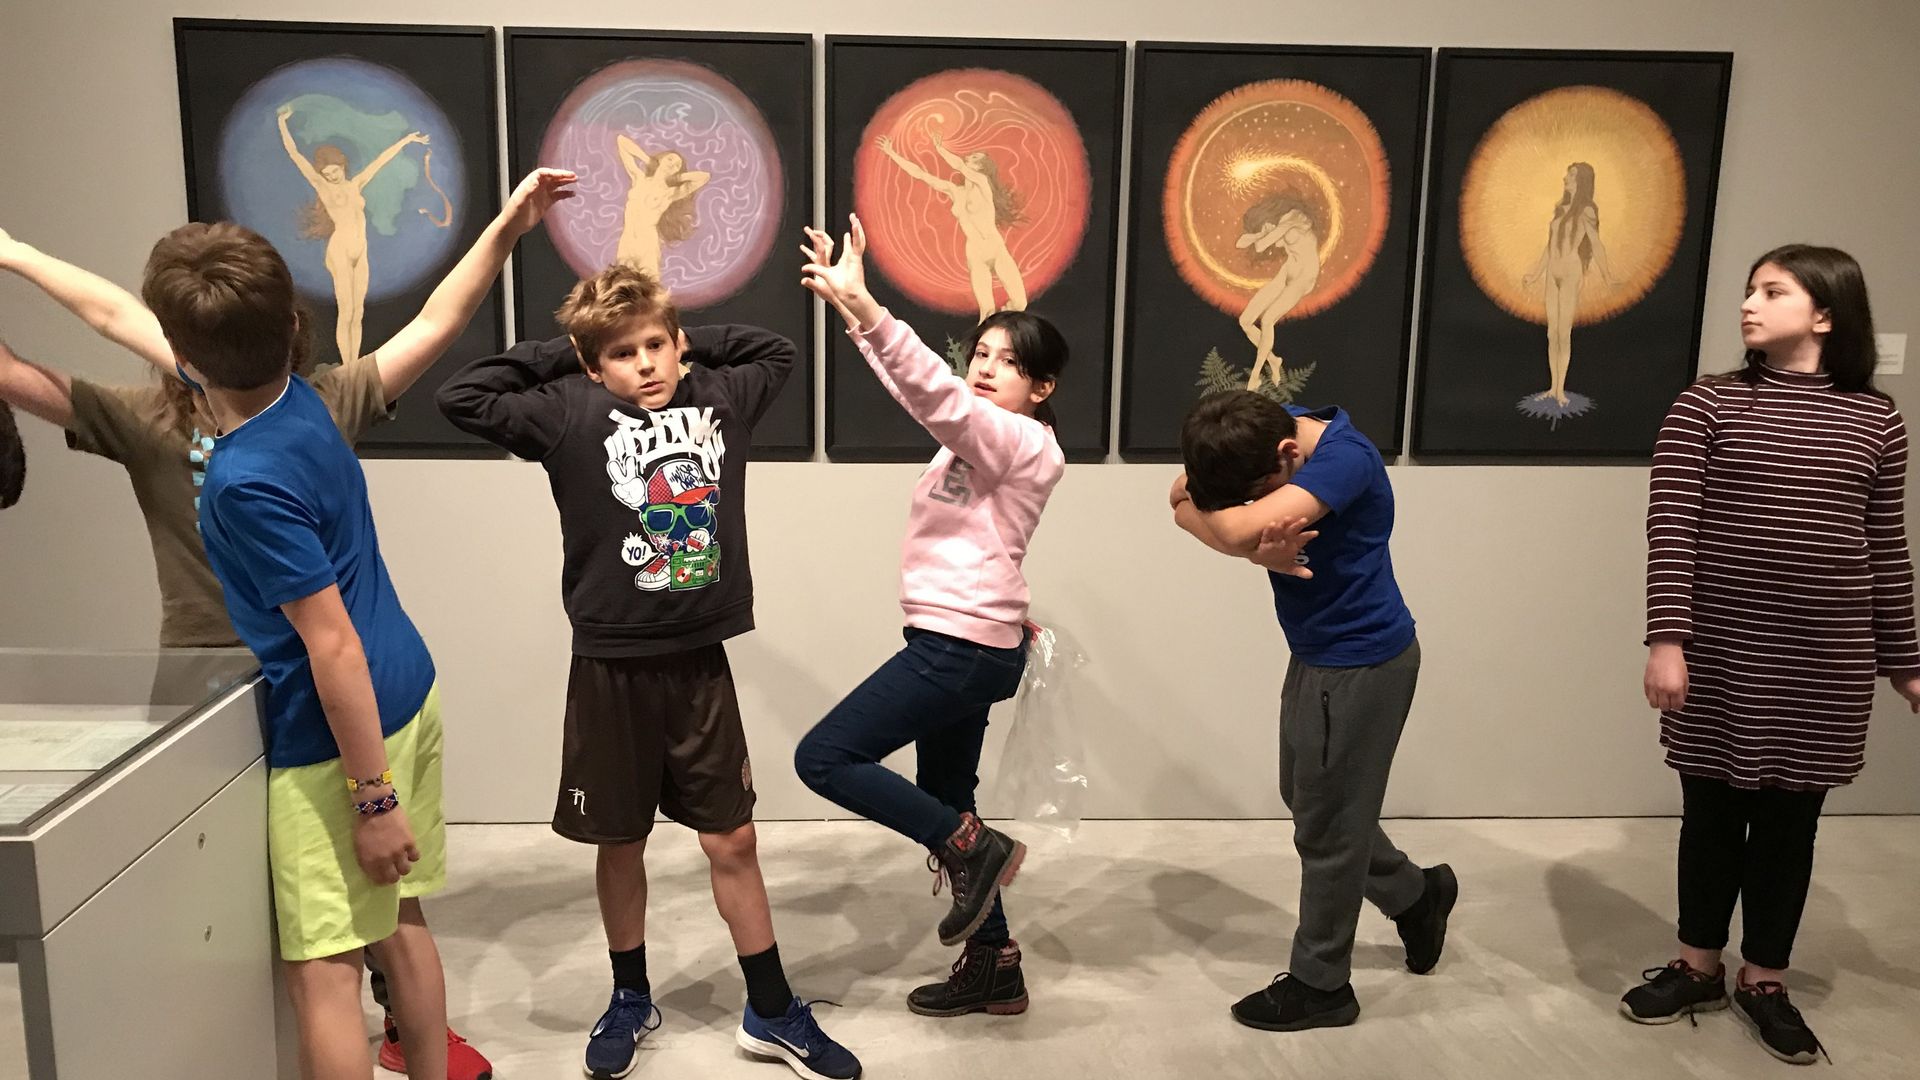 Foto: Kinder stehen vor fünf Kunstwerken und ahmen die Haltungen der abgebildeten Figuren nach.